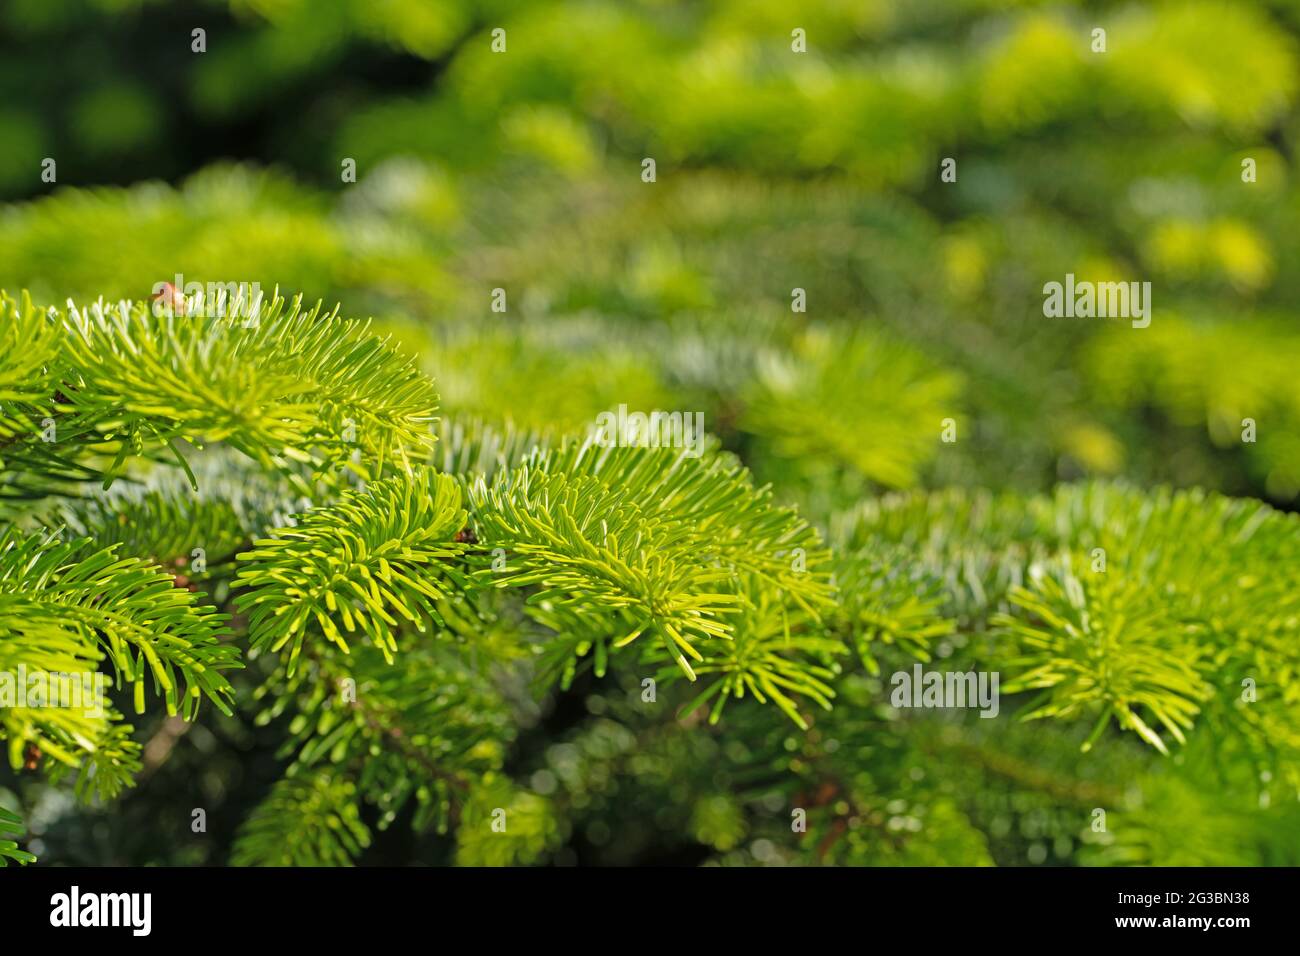 Young shoots of the Nordmann fir, Abies nordmanniana Stock Photo